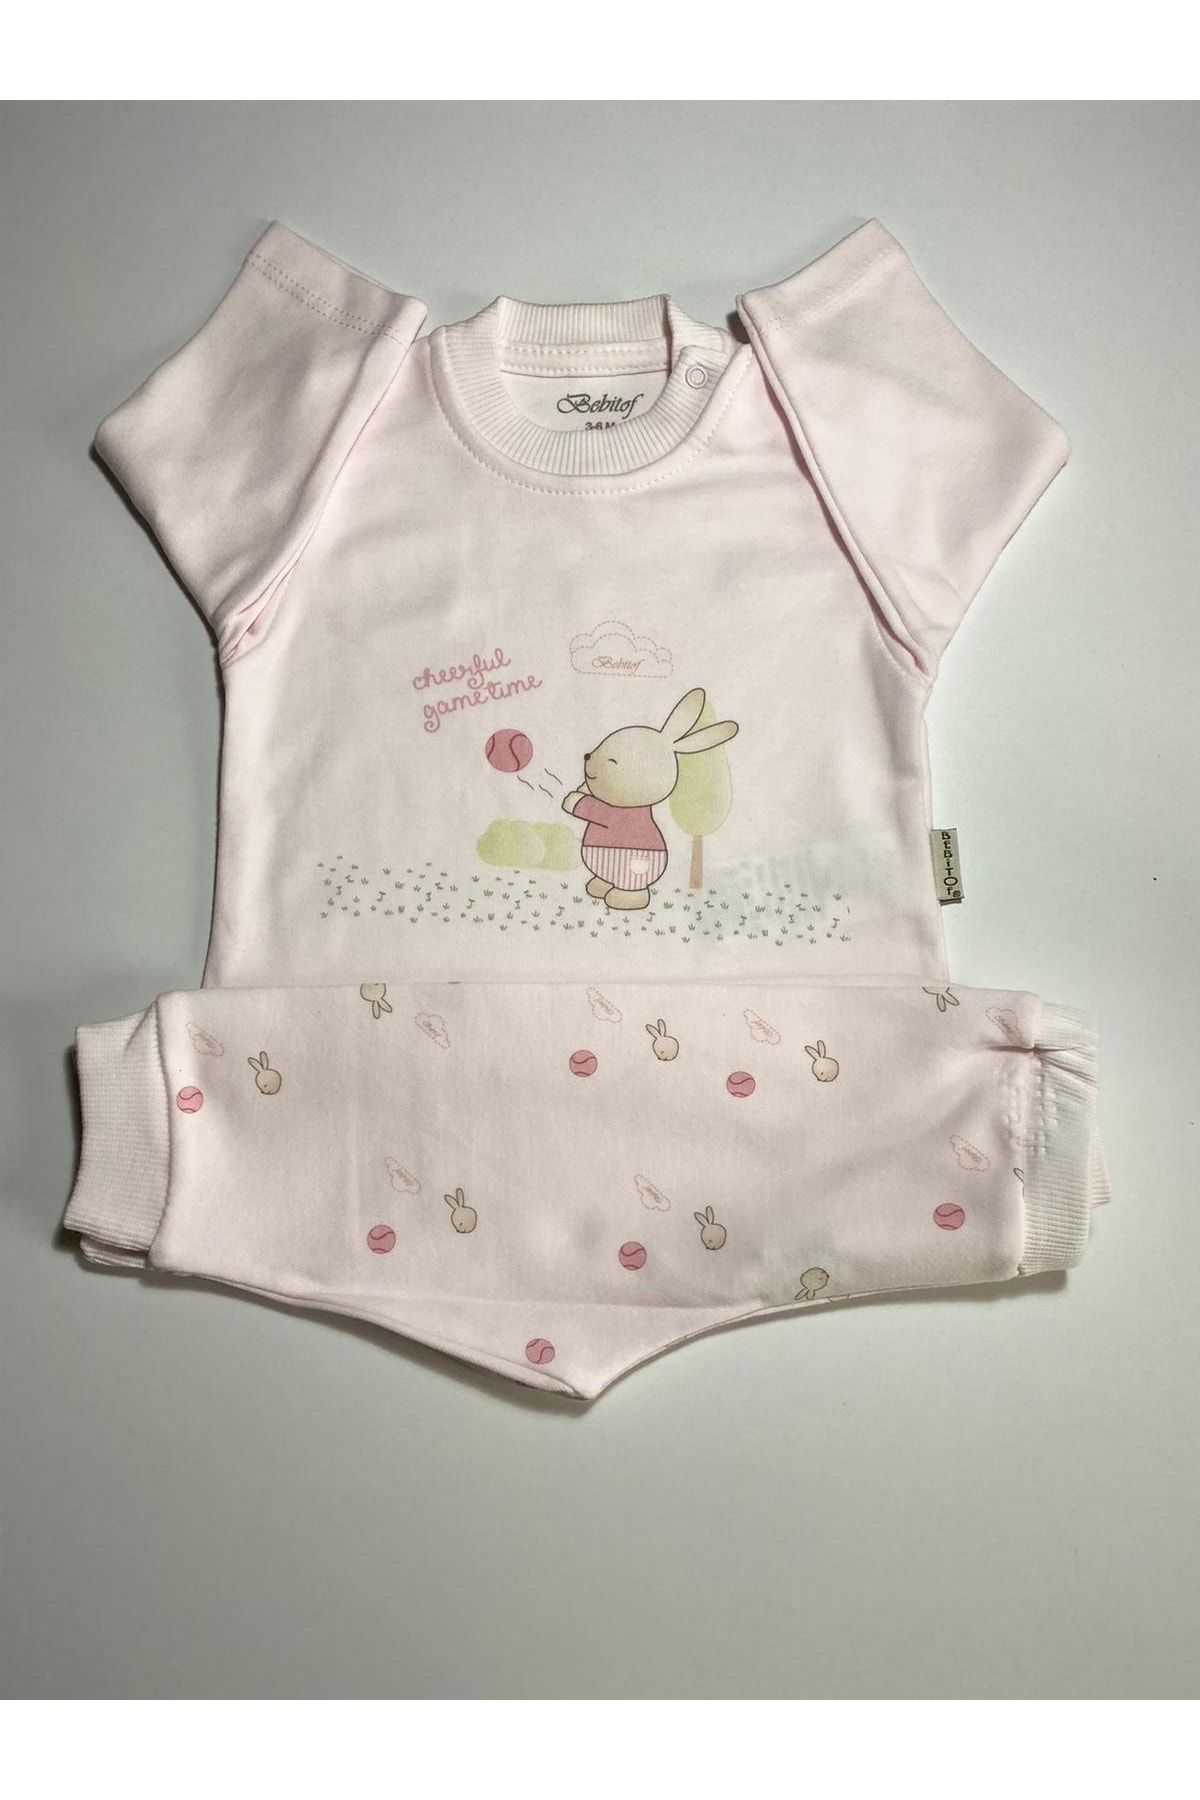 Miniworld Top Oynayan Tavşan Desenli Kız Bebek Pamuklu Pijama Takımı